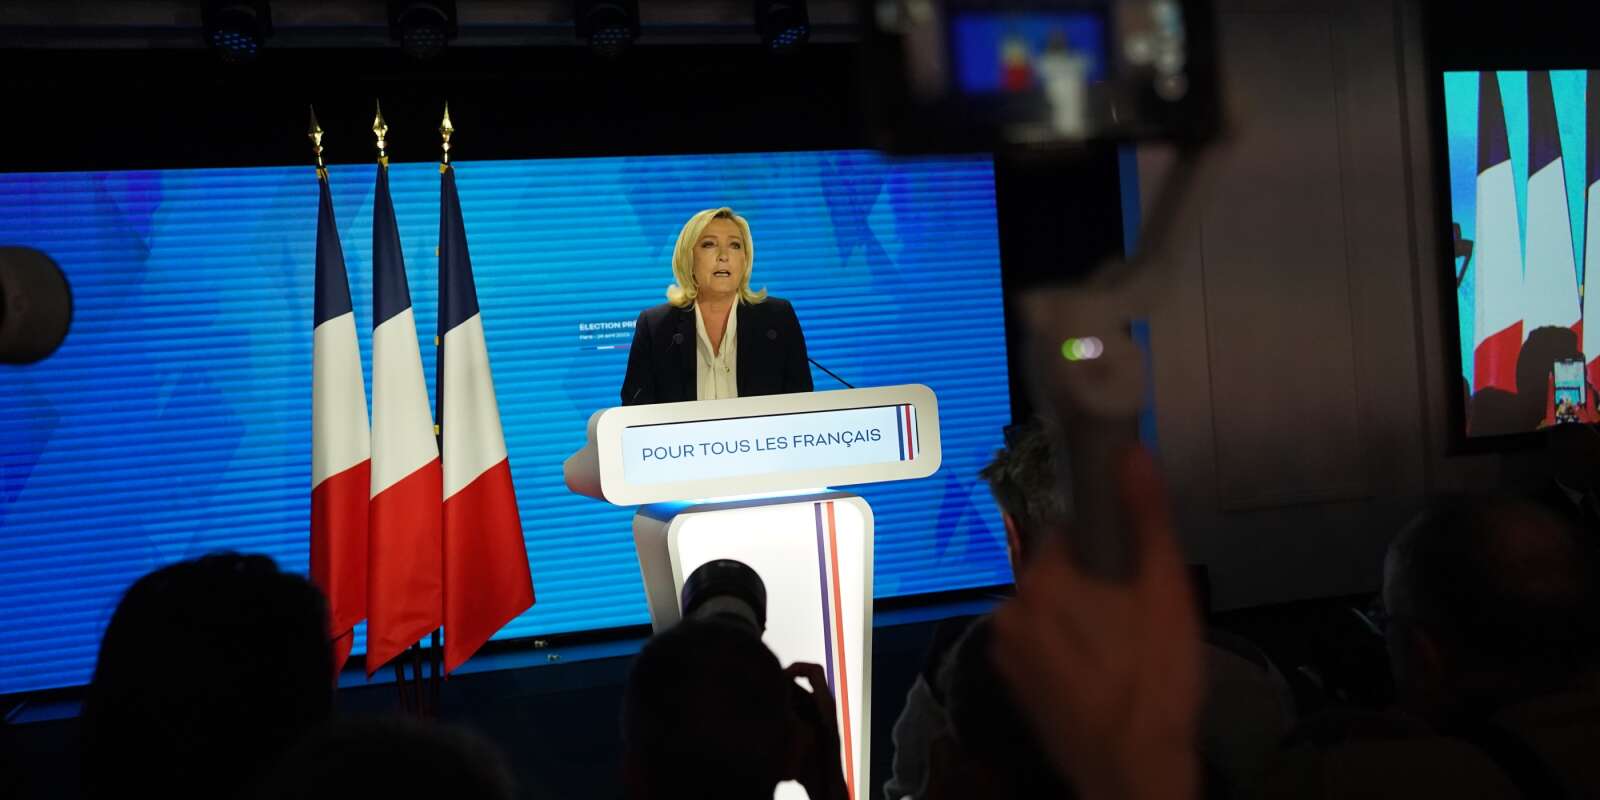 Discours de Marine Le Pen a l’issue de sa défaite au second tour de la présidentielle 2022 à Paris.